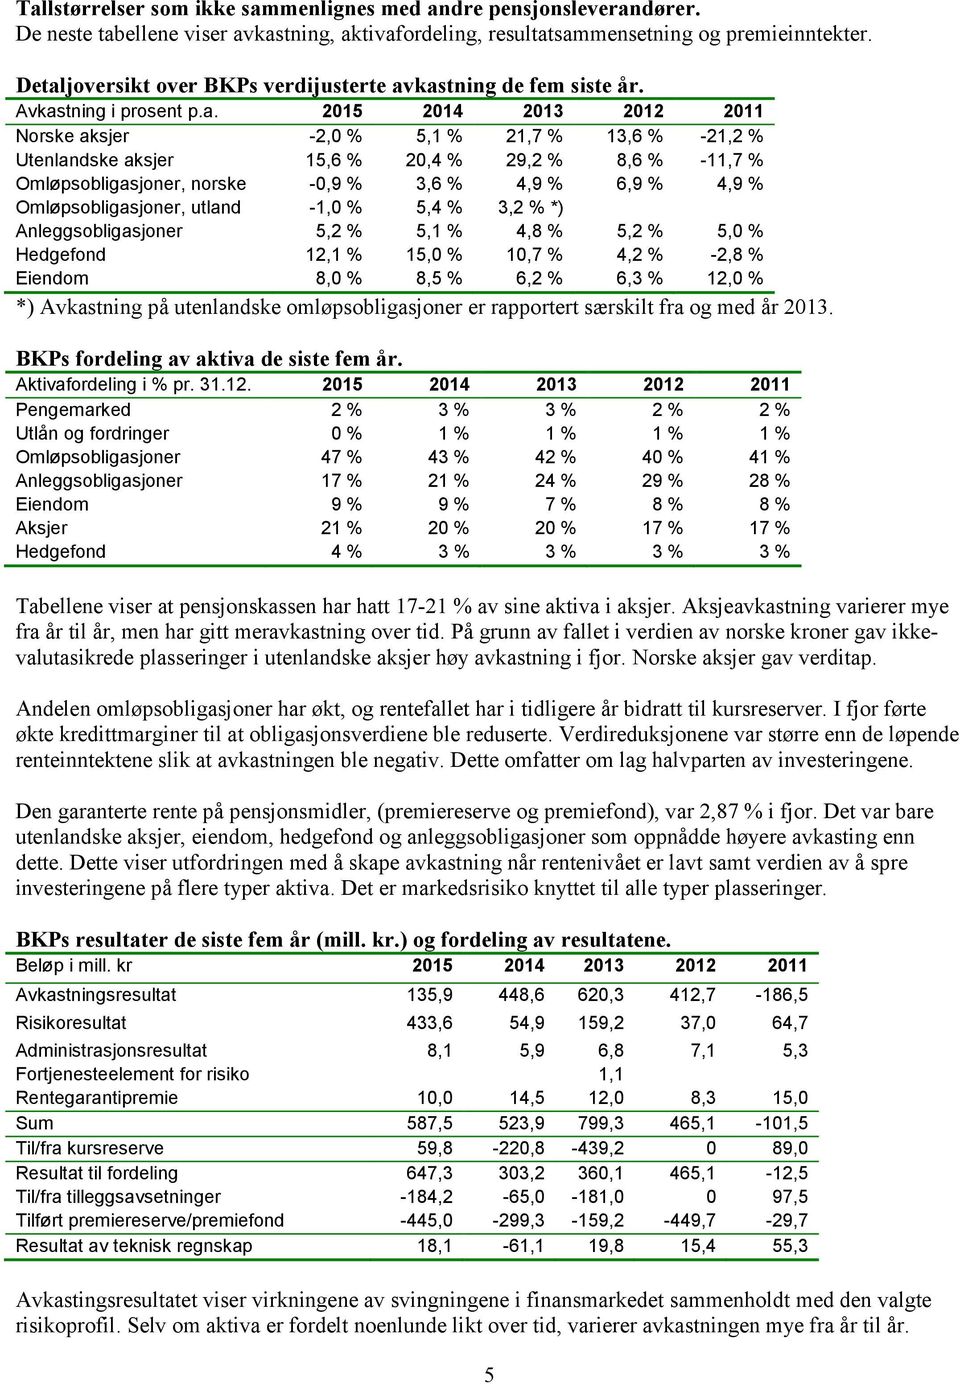 29,2 % 8,6 % -11,7 % Omløpsobligasjoner, norske -0,9 % 3,6 % 4,9 % 6,9 % 4,9 % Omløpsobligasjoner, utland -1,0 % 5,4 % 3,2 % *) Anleggsobligasjoner 5,2 % 5,1 % 4,8 % 5,2 % 5,0 % Hedgefond 12,1 % 15,0